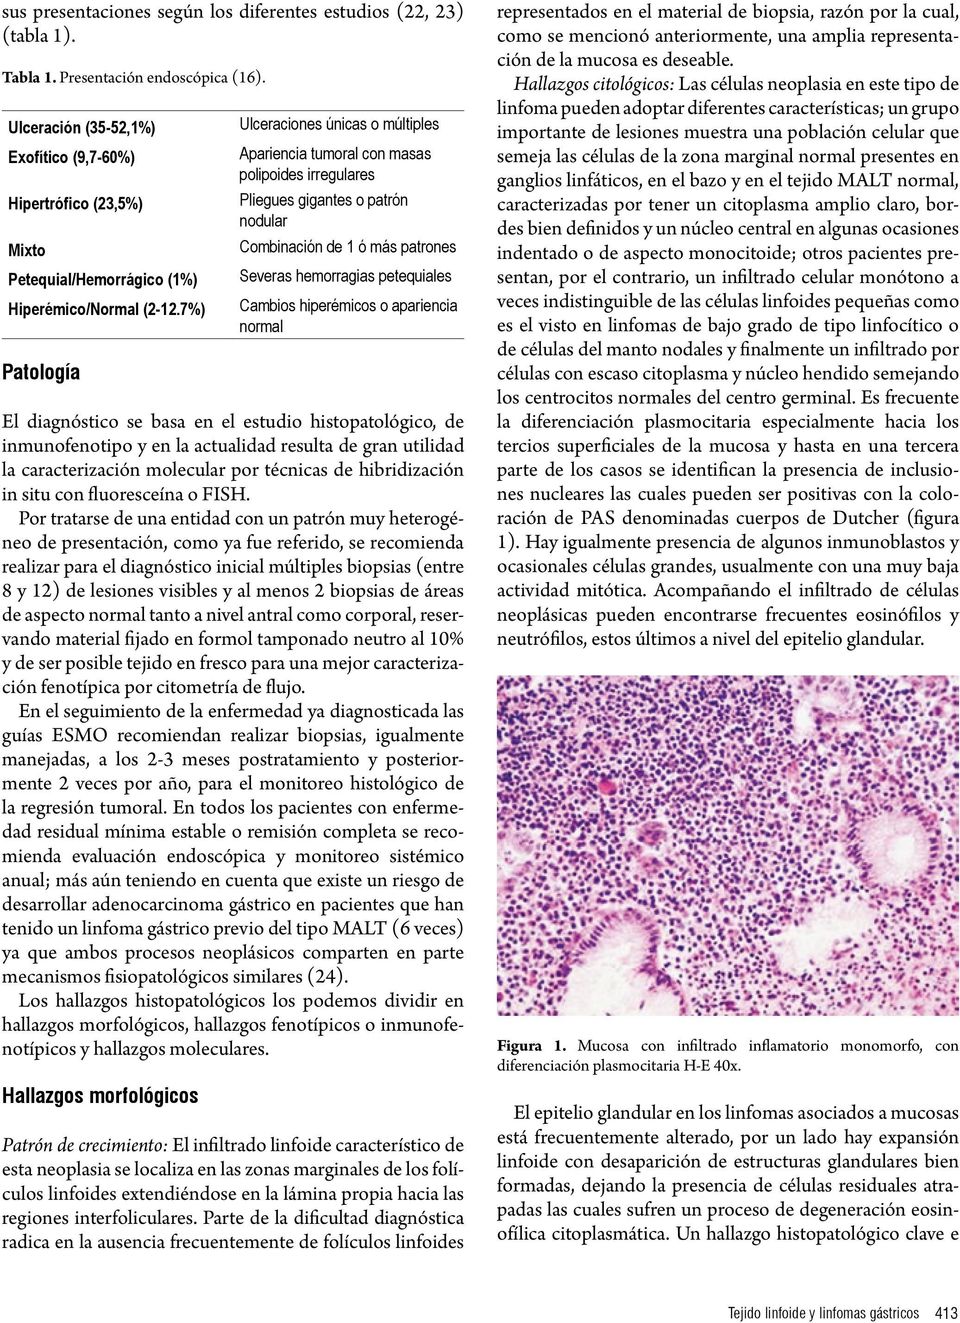 7%) Patología Ulceraciones únicas o múltiples Apariencia tumoral con masas polipoides irregulares Pliegues gigantes o patrón nodular Combinación de 1 ó más patrones Severas hemorragias petequiales